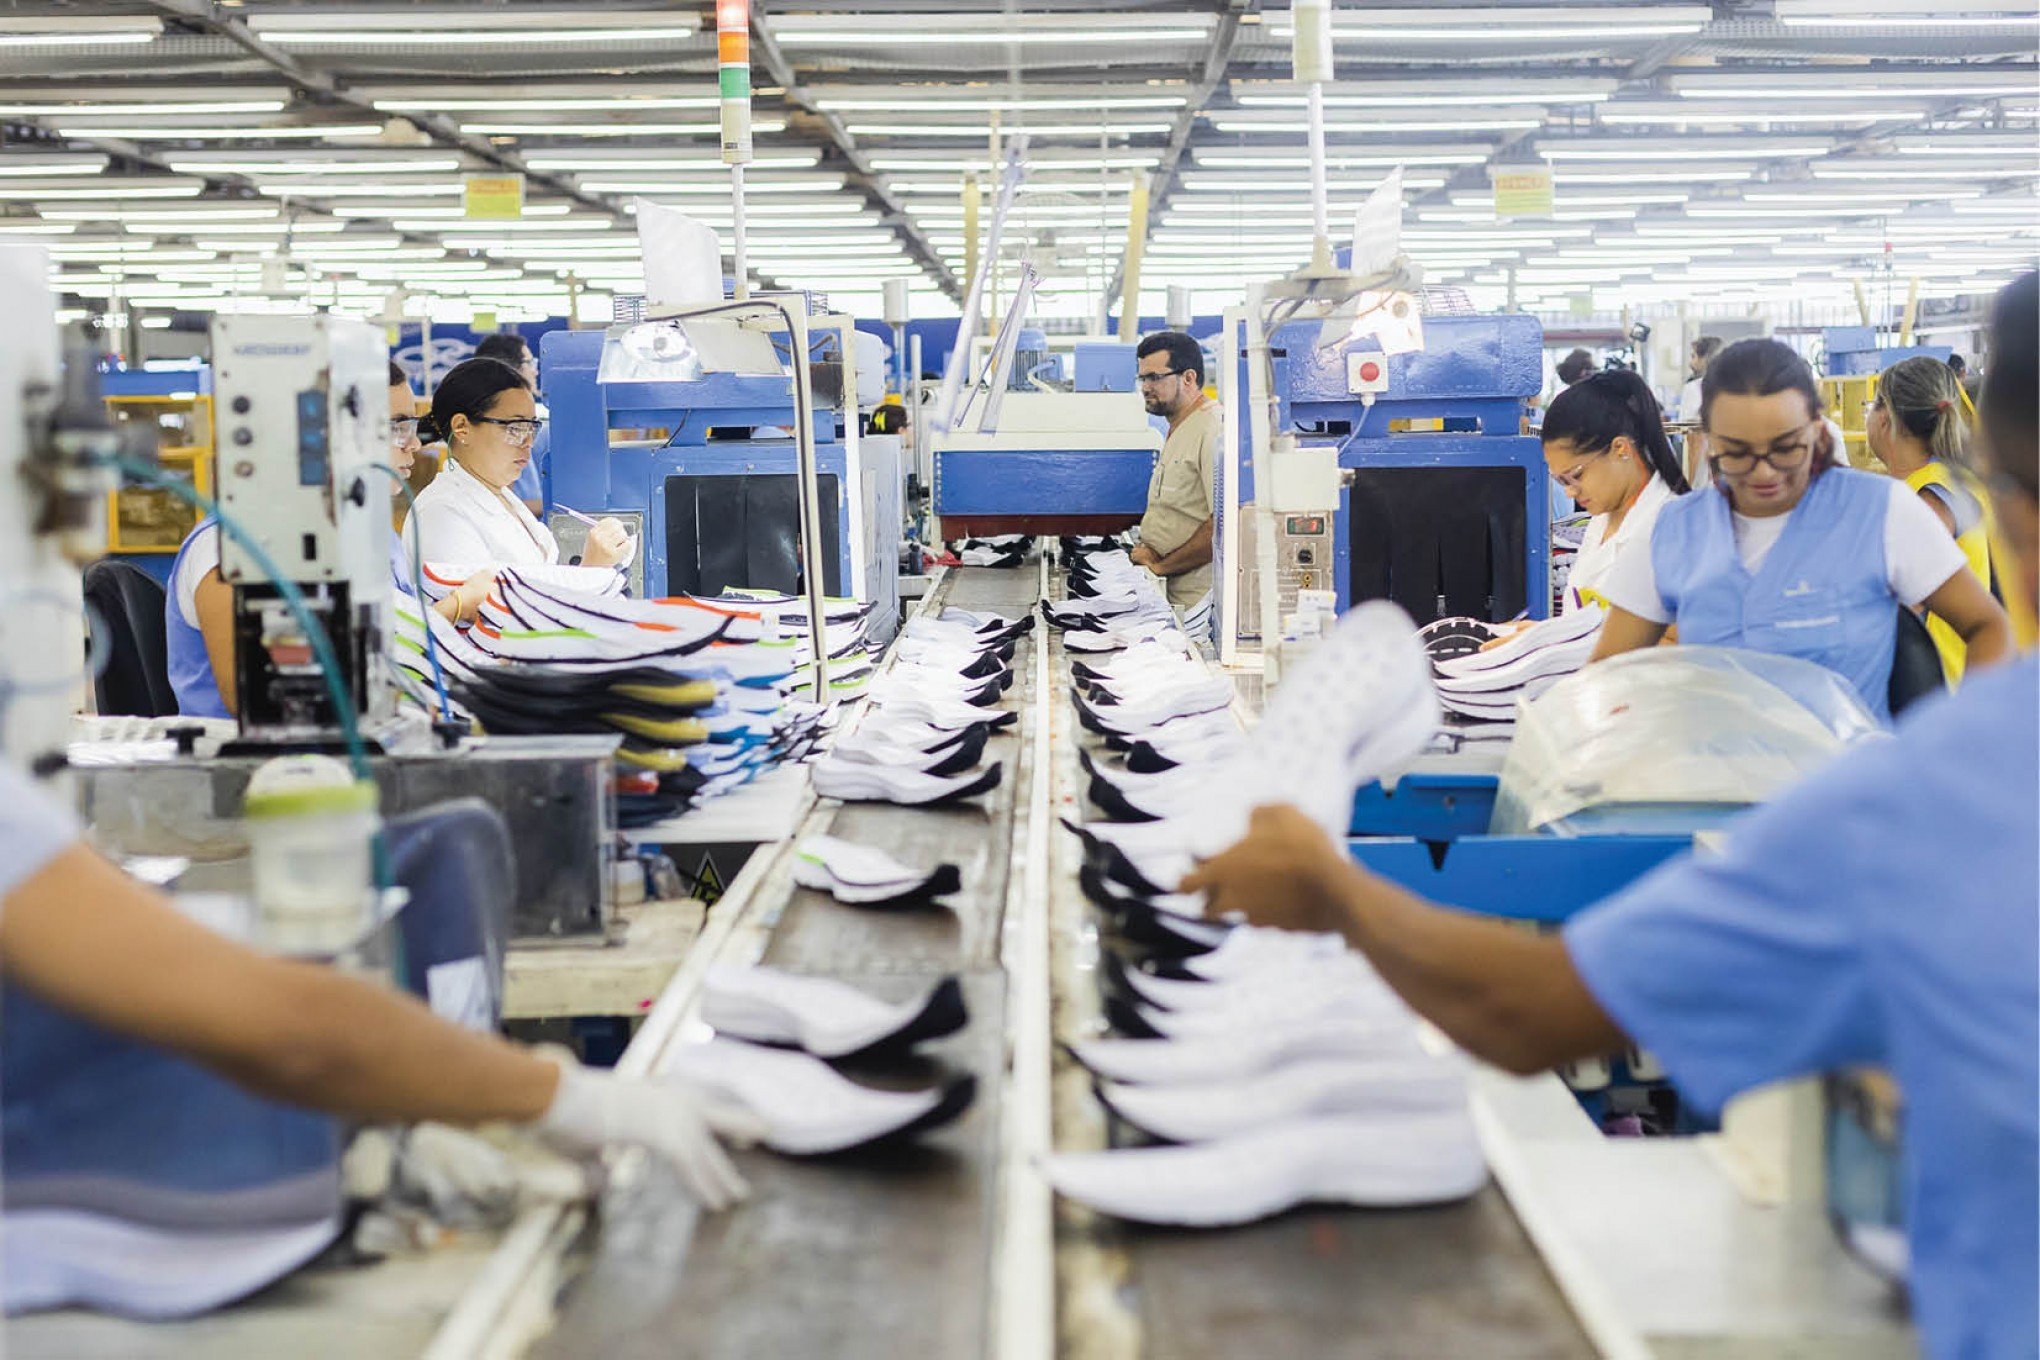 "Incrivelmente baixo": Calçado chinês tem menor preço da história e deixa setor em alerta